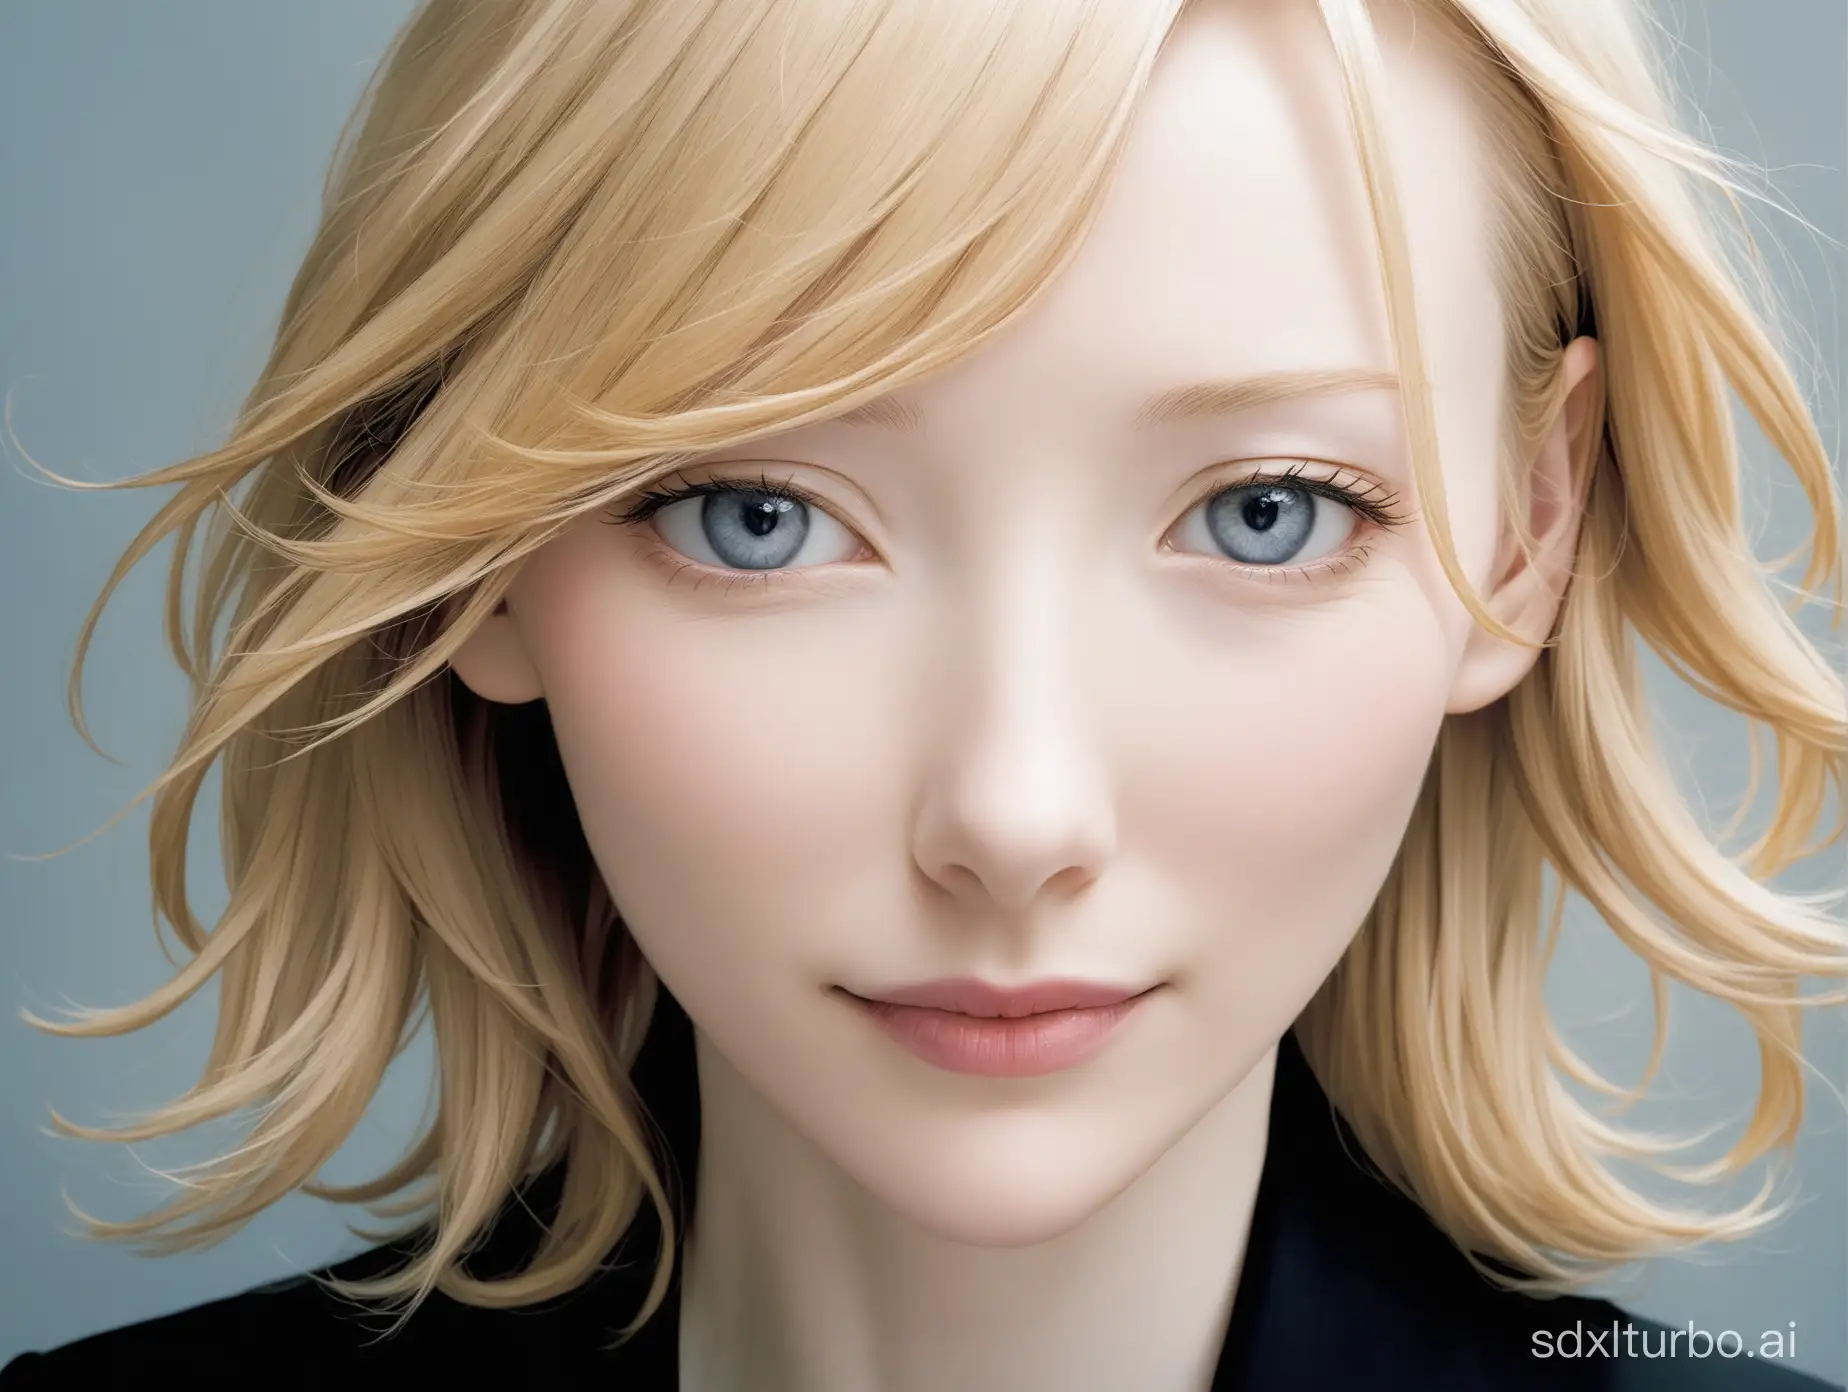 inko Kawauchi's photographic portrait of Cate Blanchett, upper body 